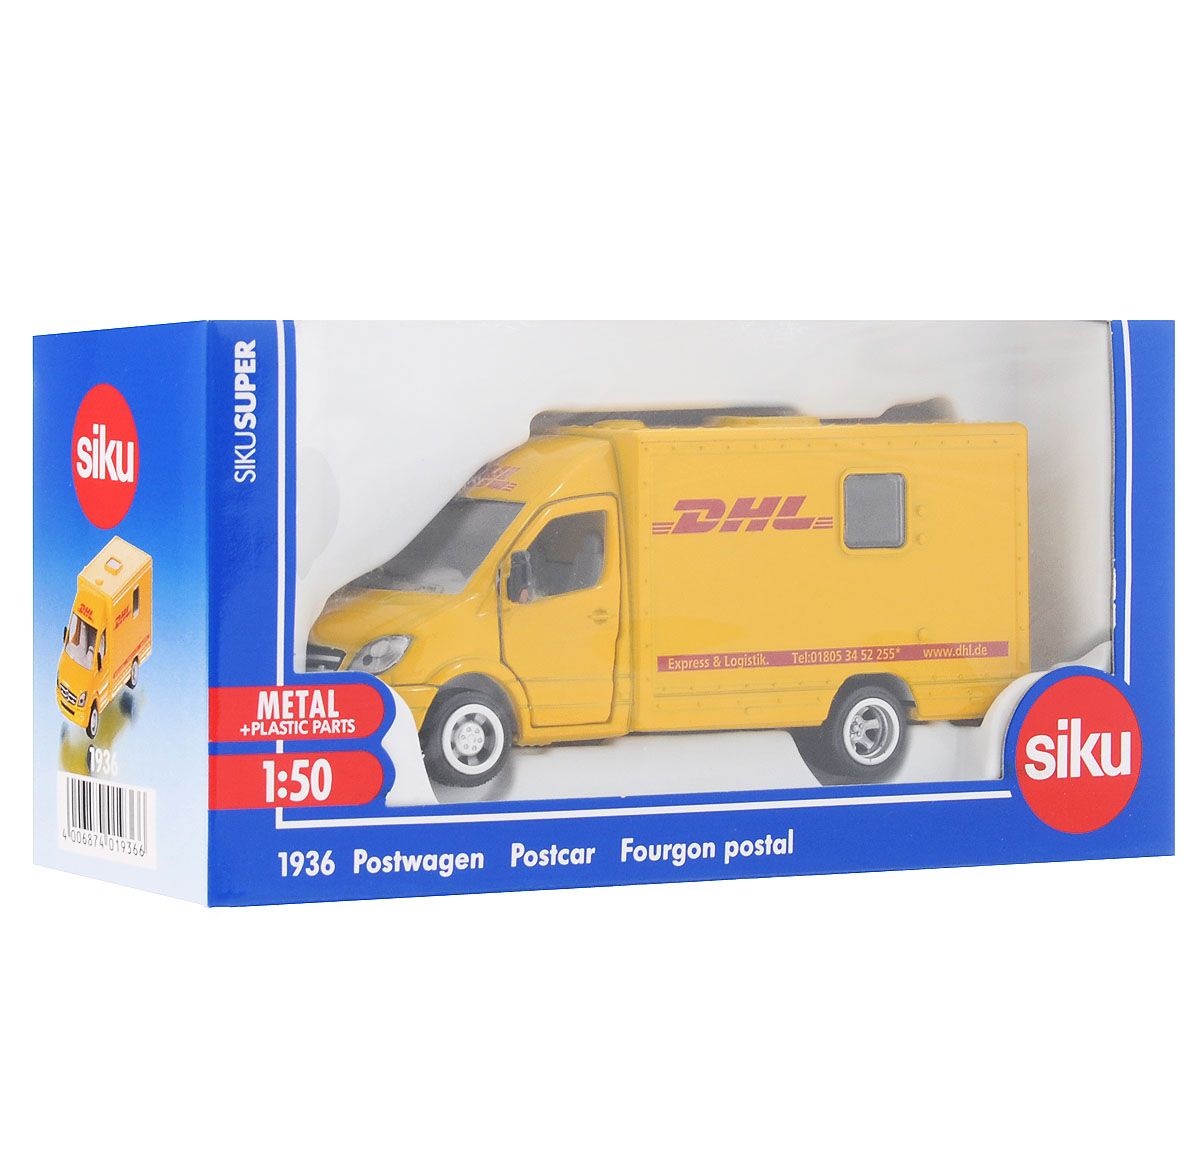 Игрушечная модель - Почтовая машина DHL, 1:50  